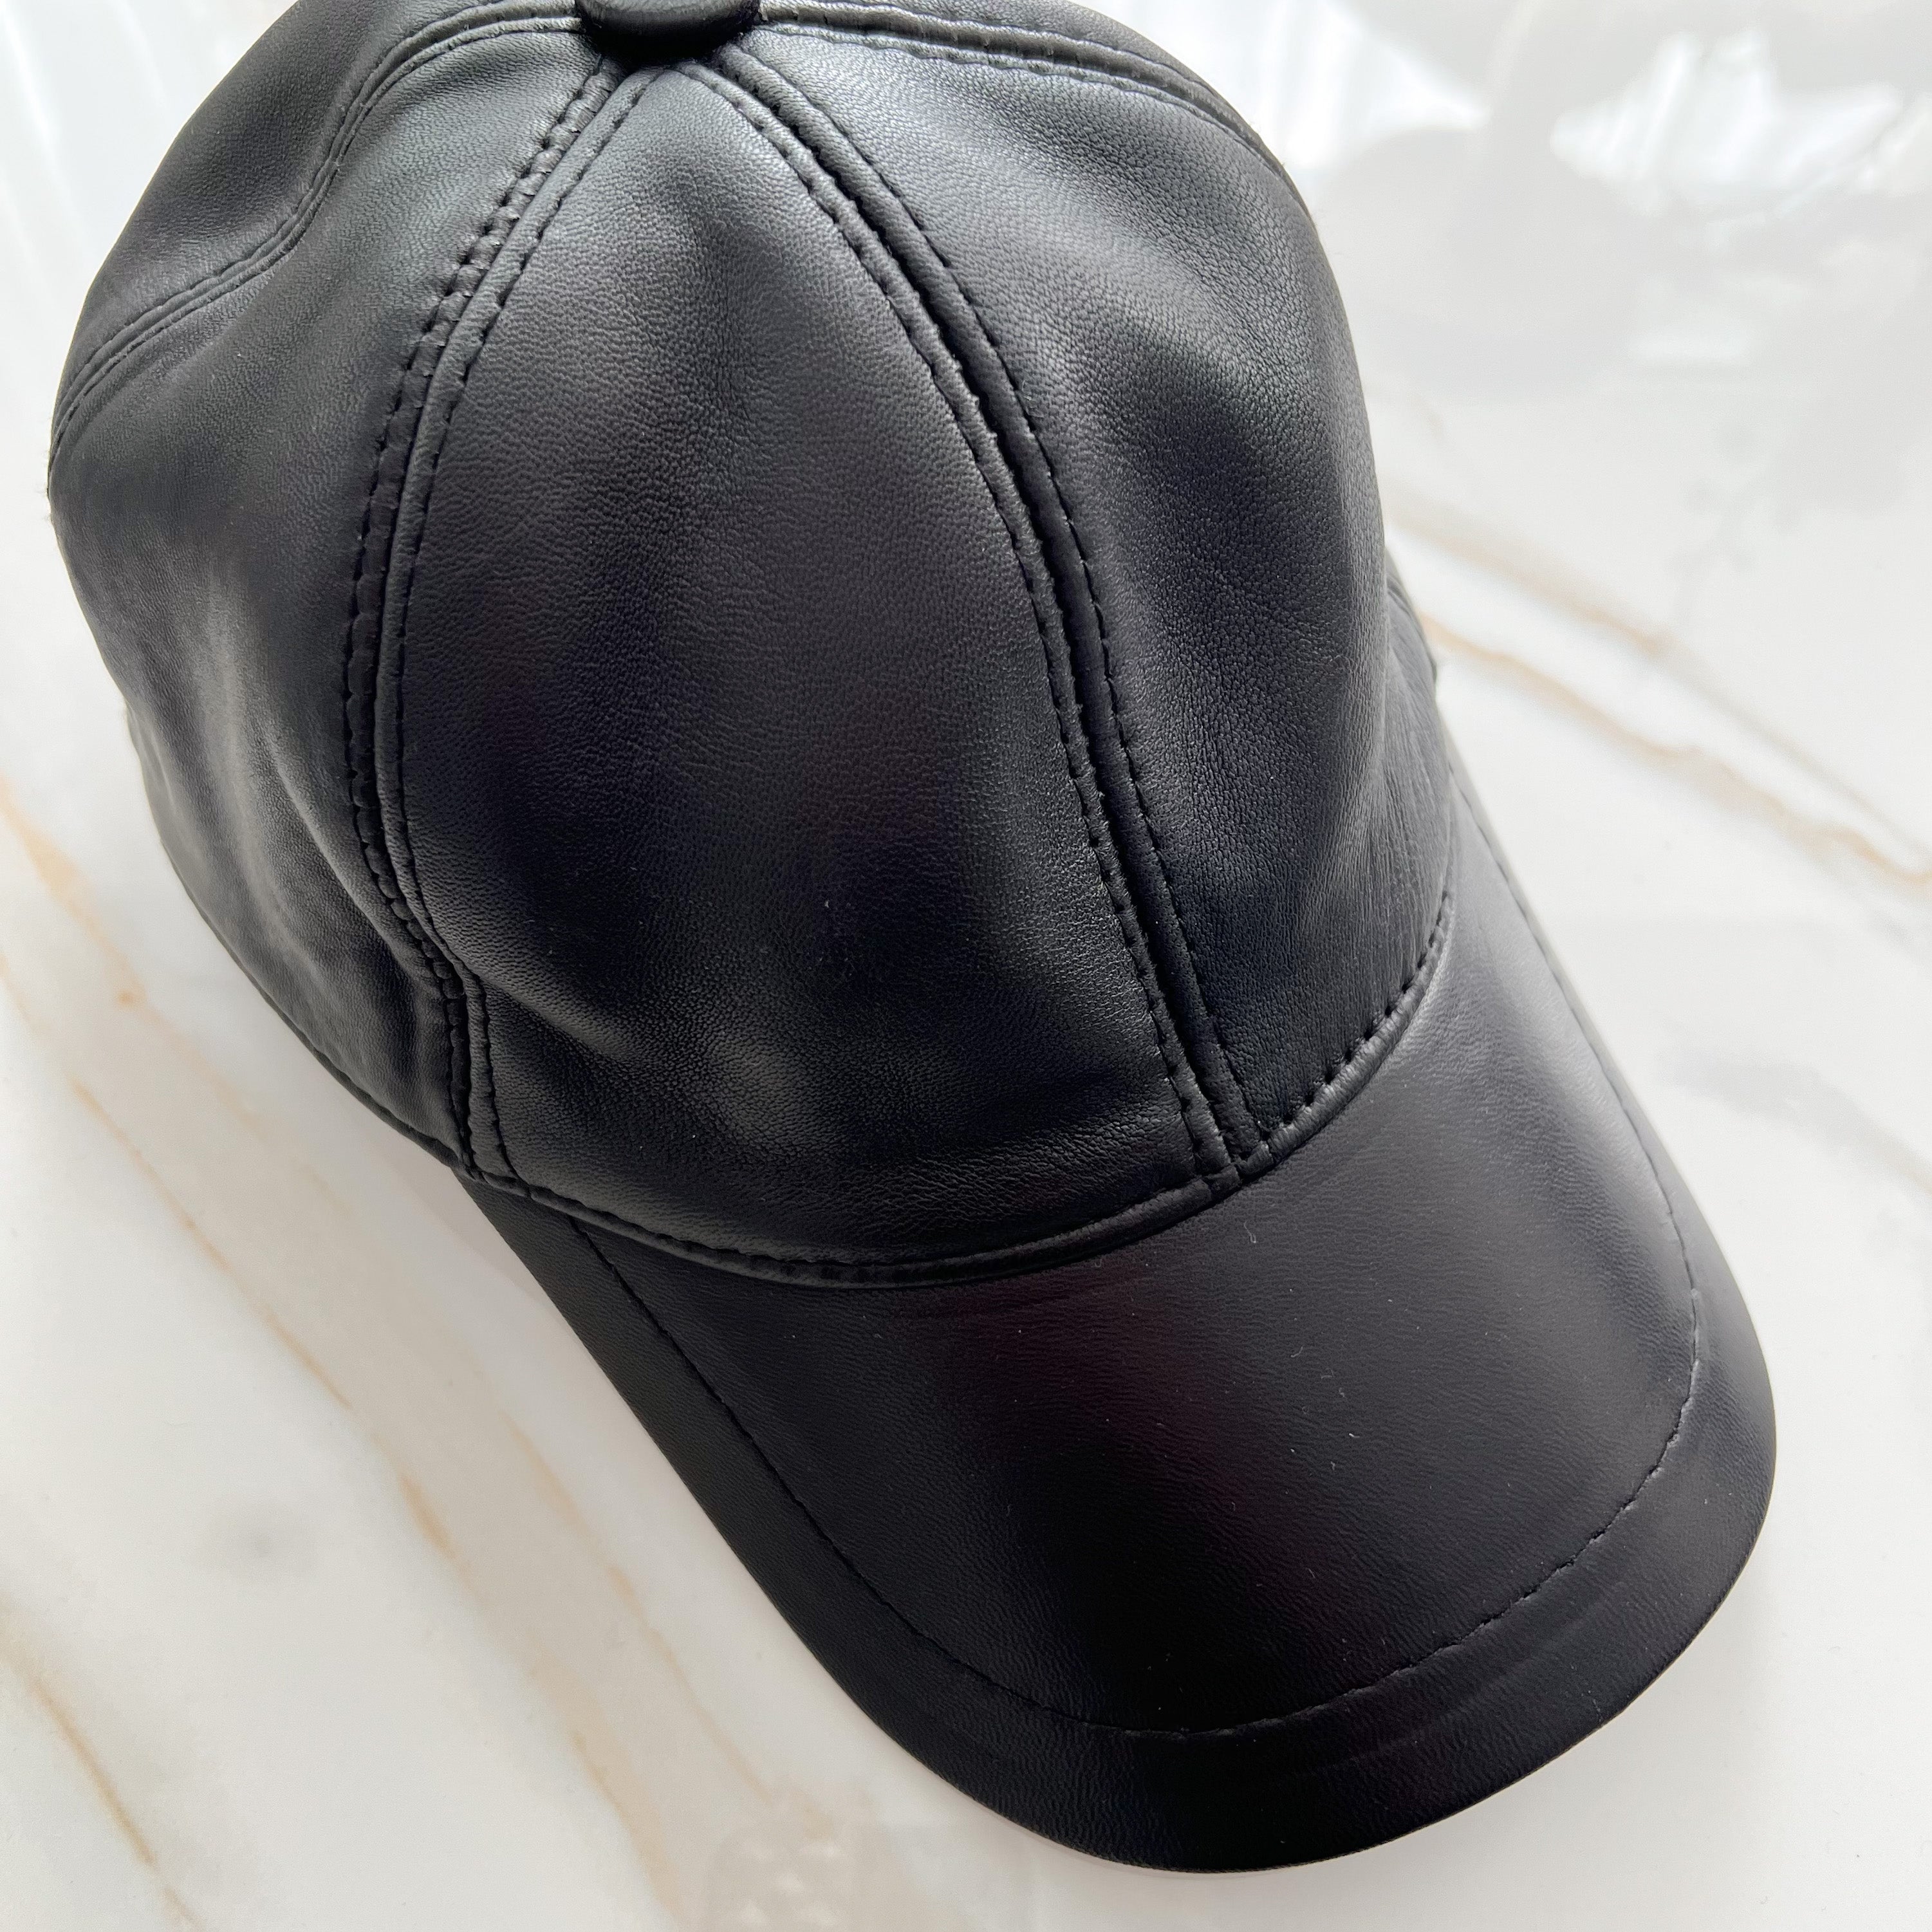 Genuine Black Leather Cap